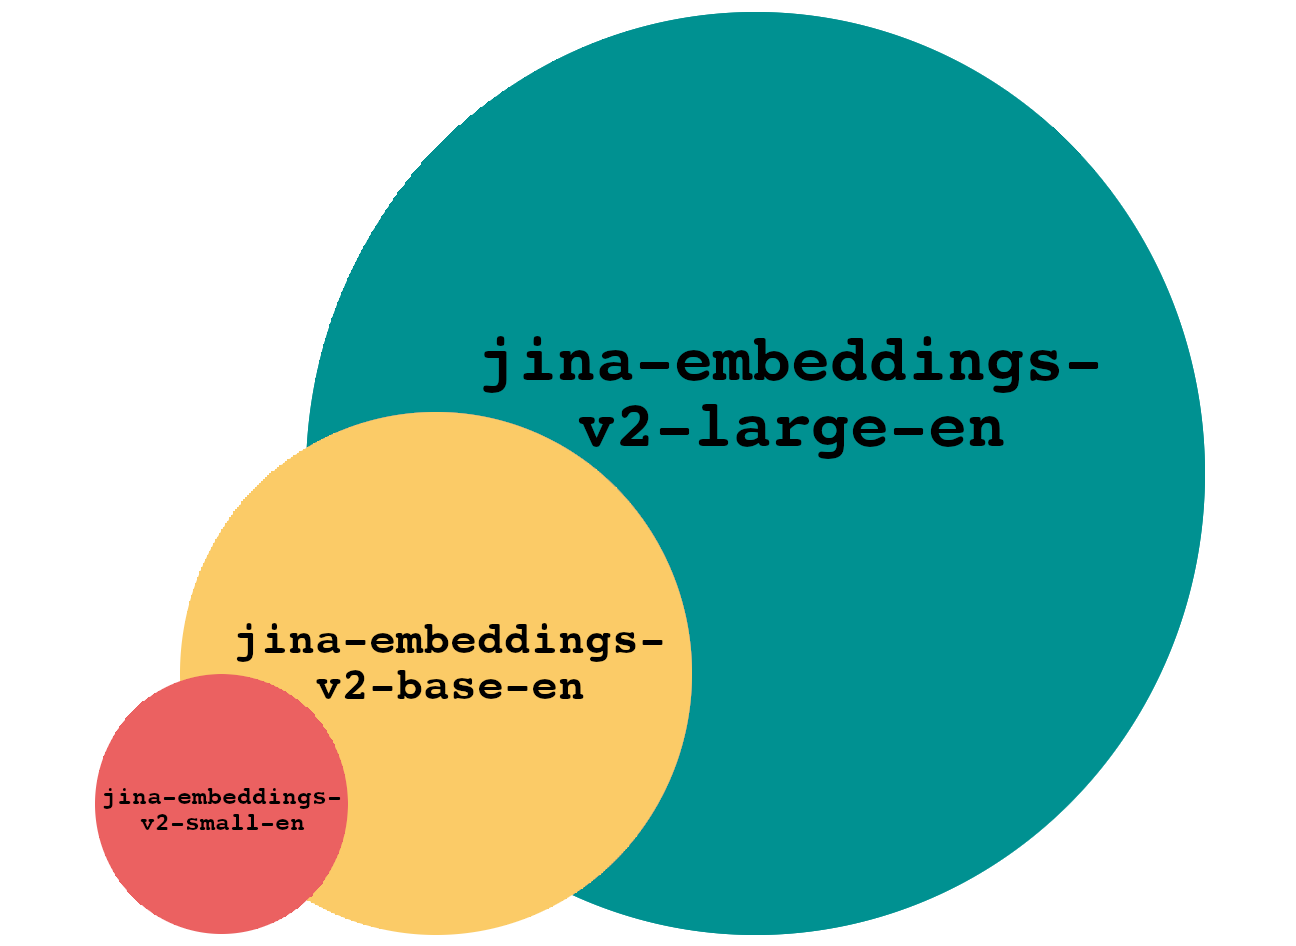 Diagram illustrating hierarchical overlap of circles representing repositories: v2-base-en, v2-large-en, v2-small-en